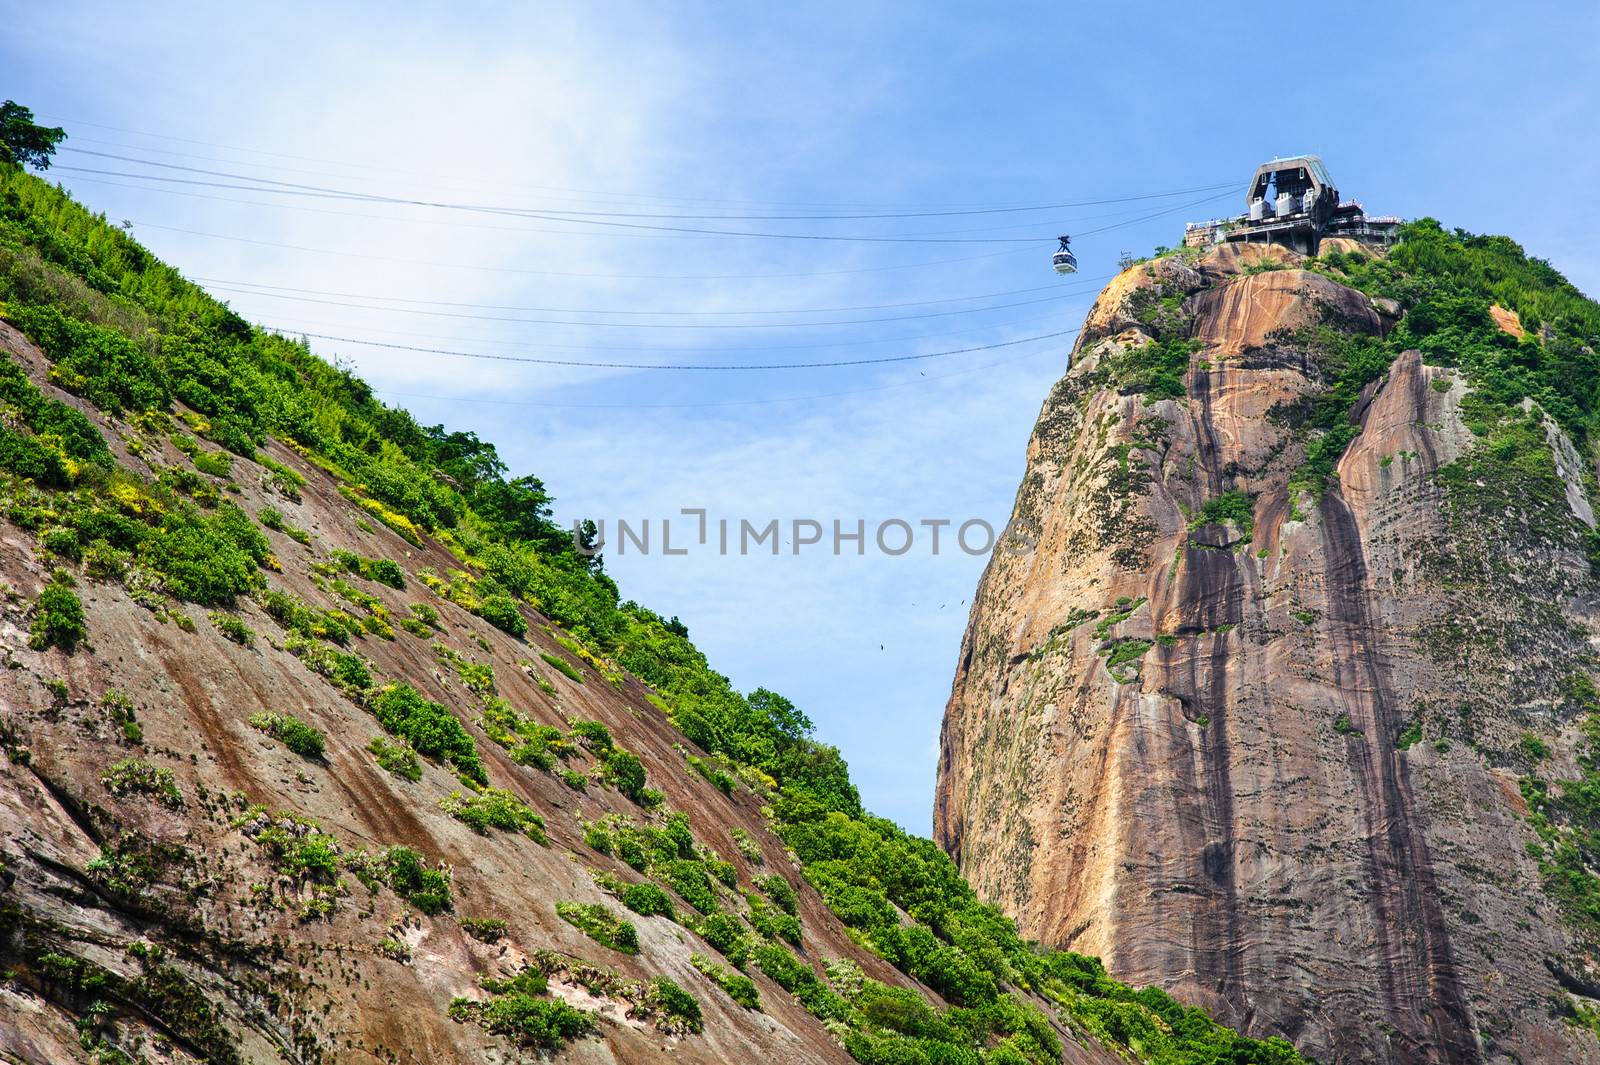 Cable car on Sugarloaf mountain, Rio de Janeiro, Brazil.